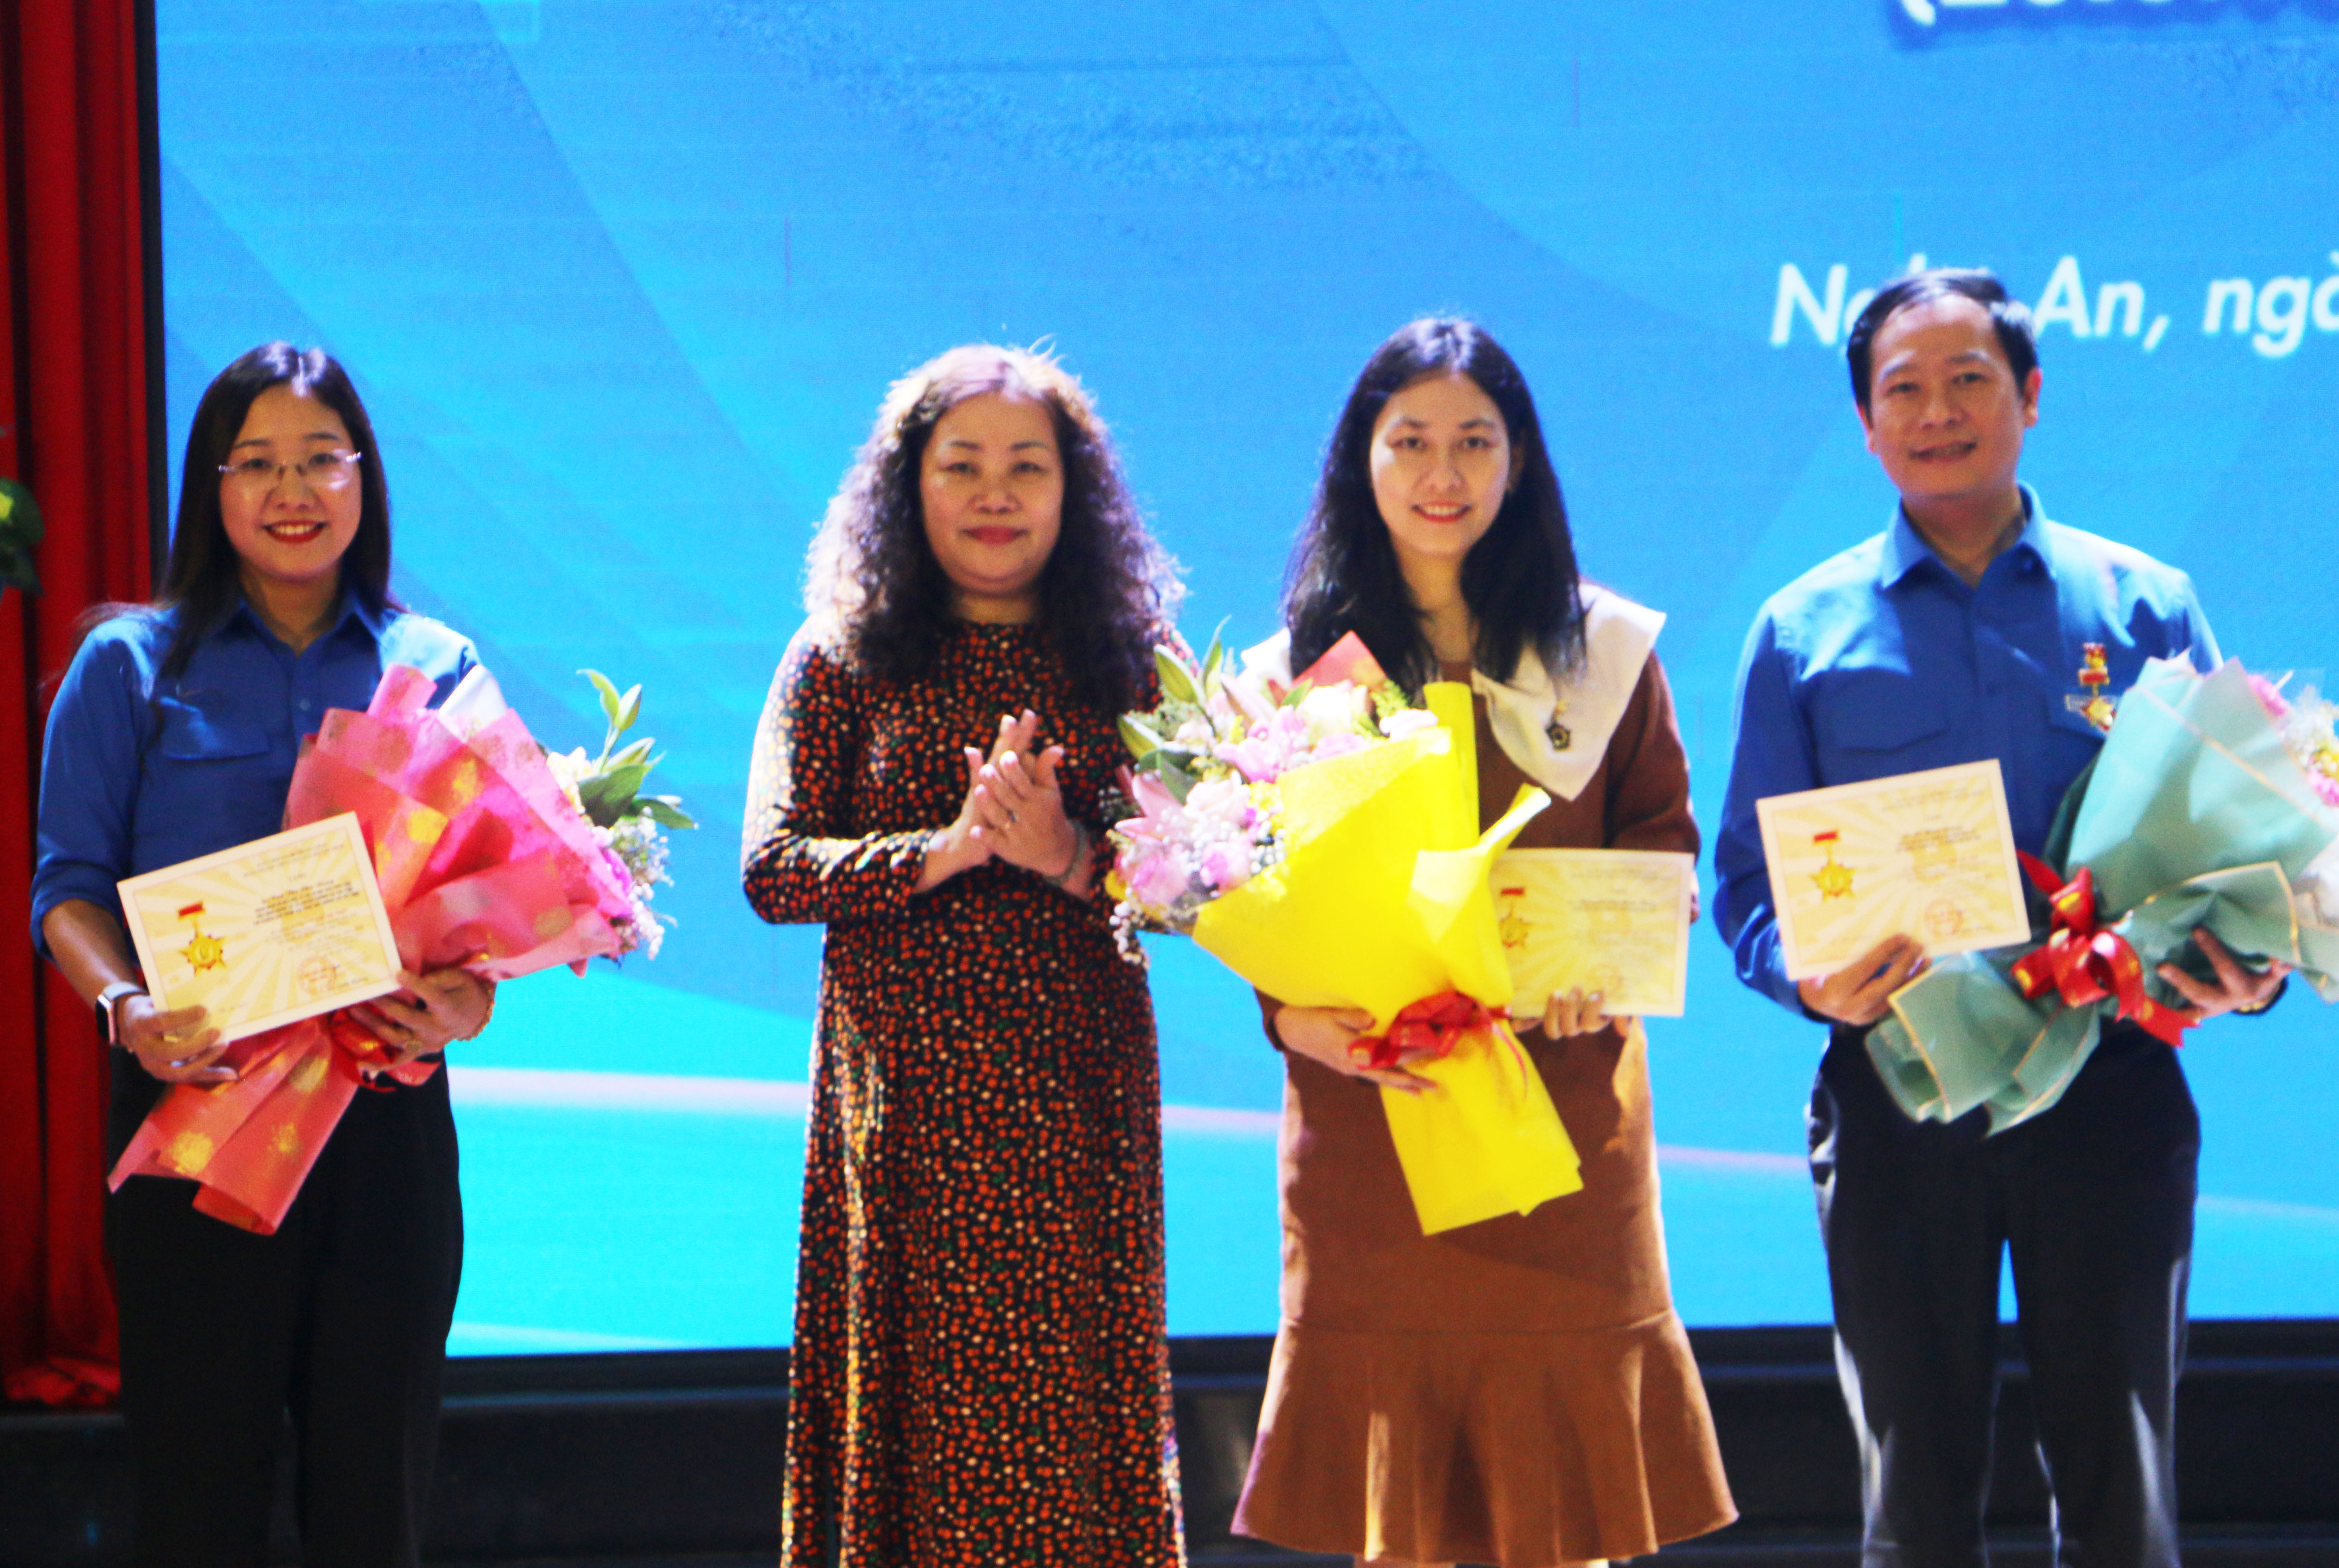 Đồng chí Nguyễn Thị Thu Hường - Tỉnh ủy viên, Trưởng Ban Tuyên giáo Tỉnh ủy Nghê An cũng đã đại diện trao Kỷ niệm chương “Vì thế hệ trẻ” cho giảng viên, cán bộ của Trường